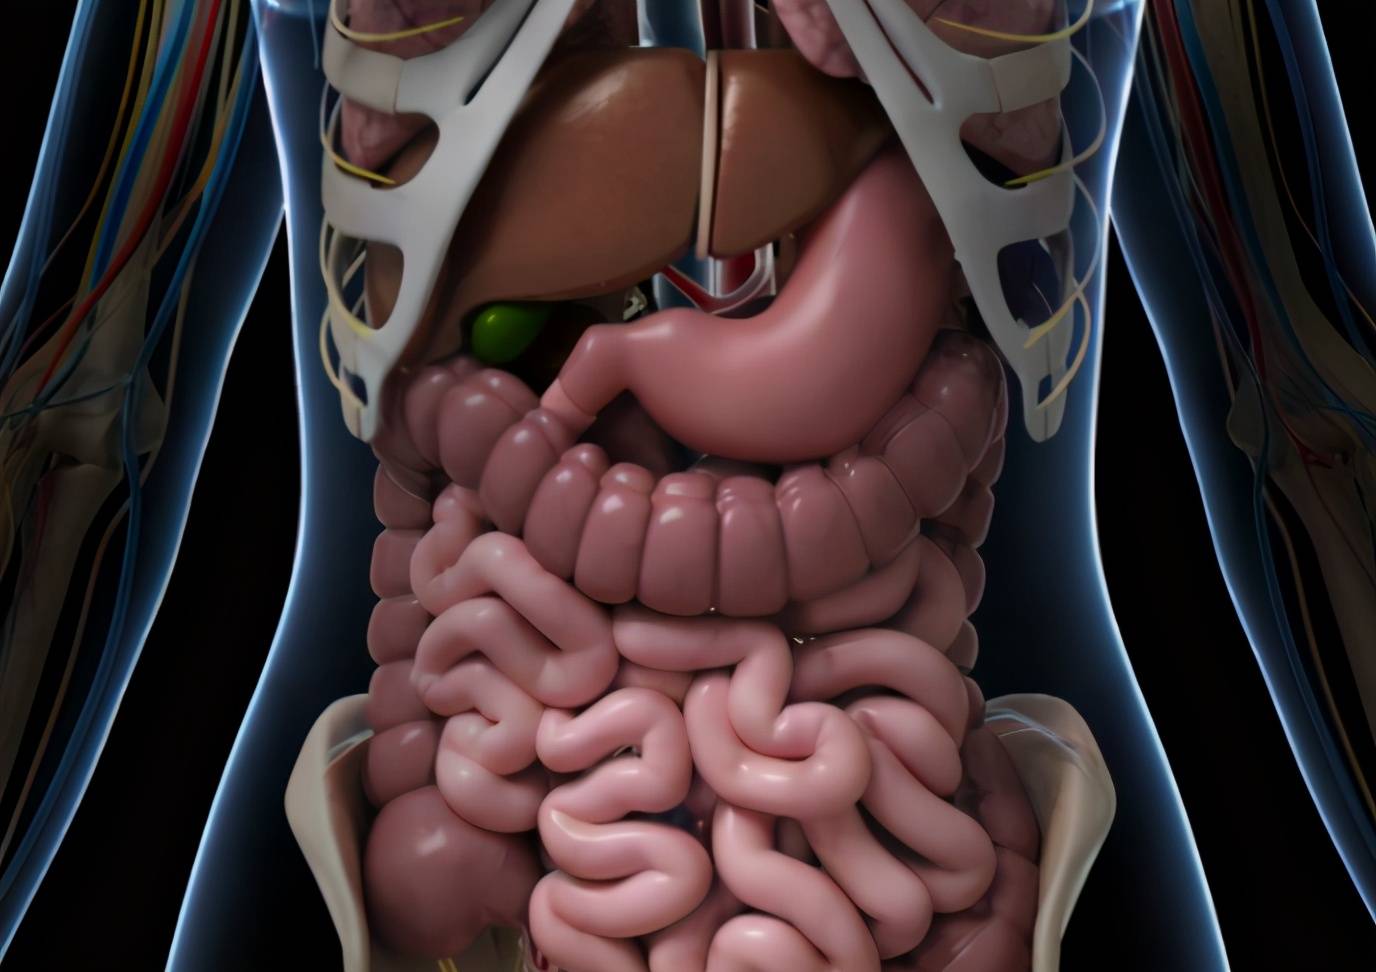 胃角人体图片